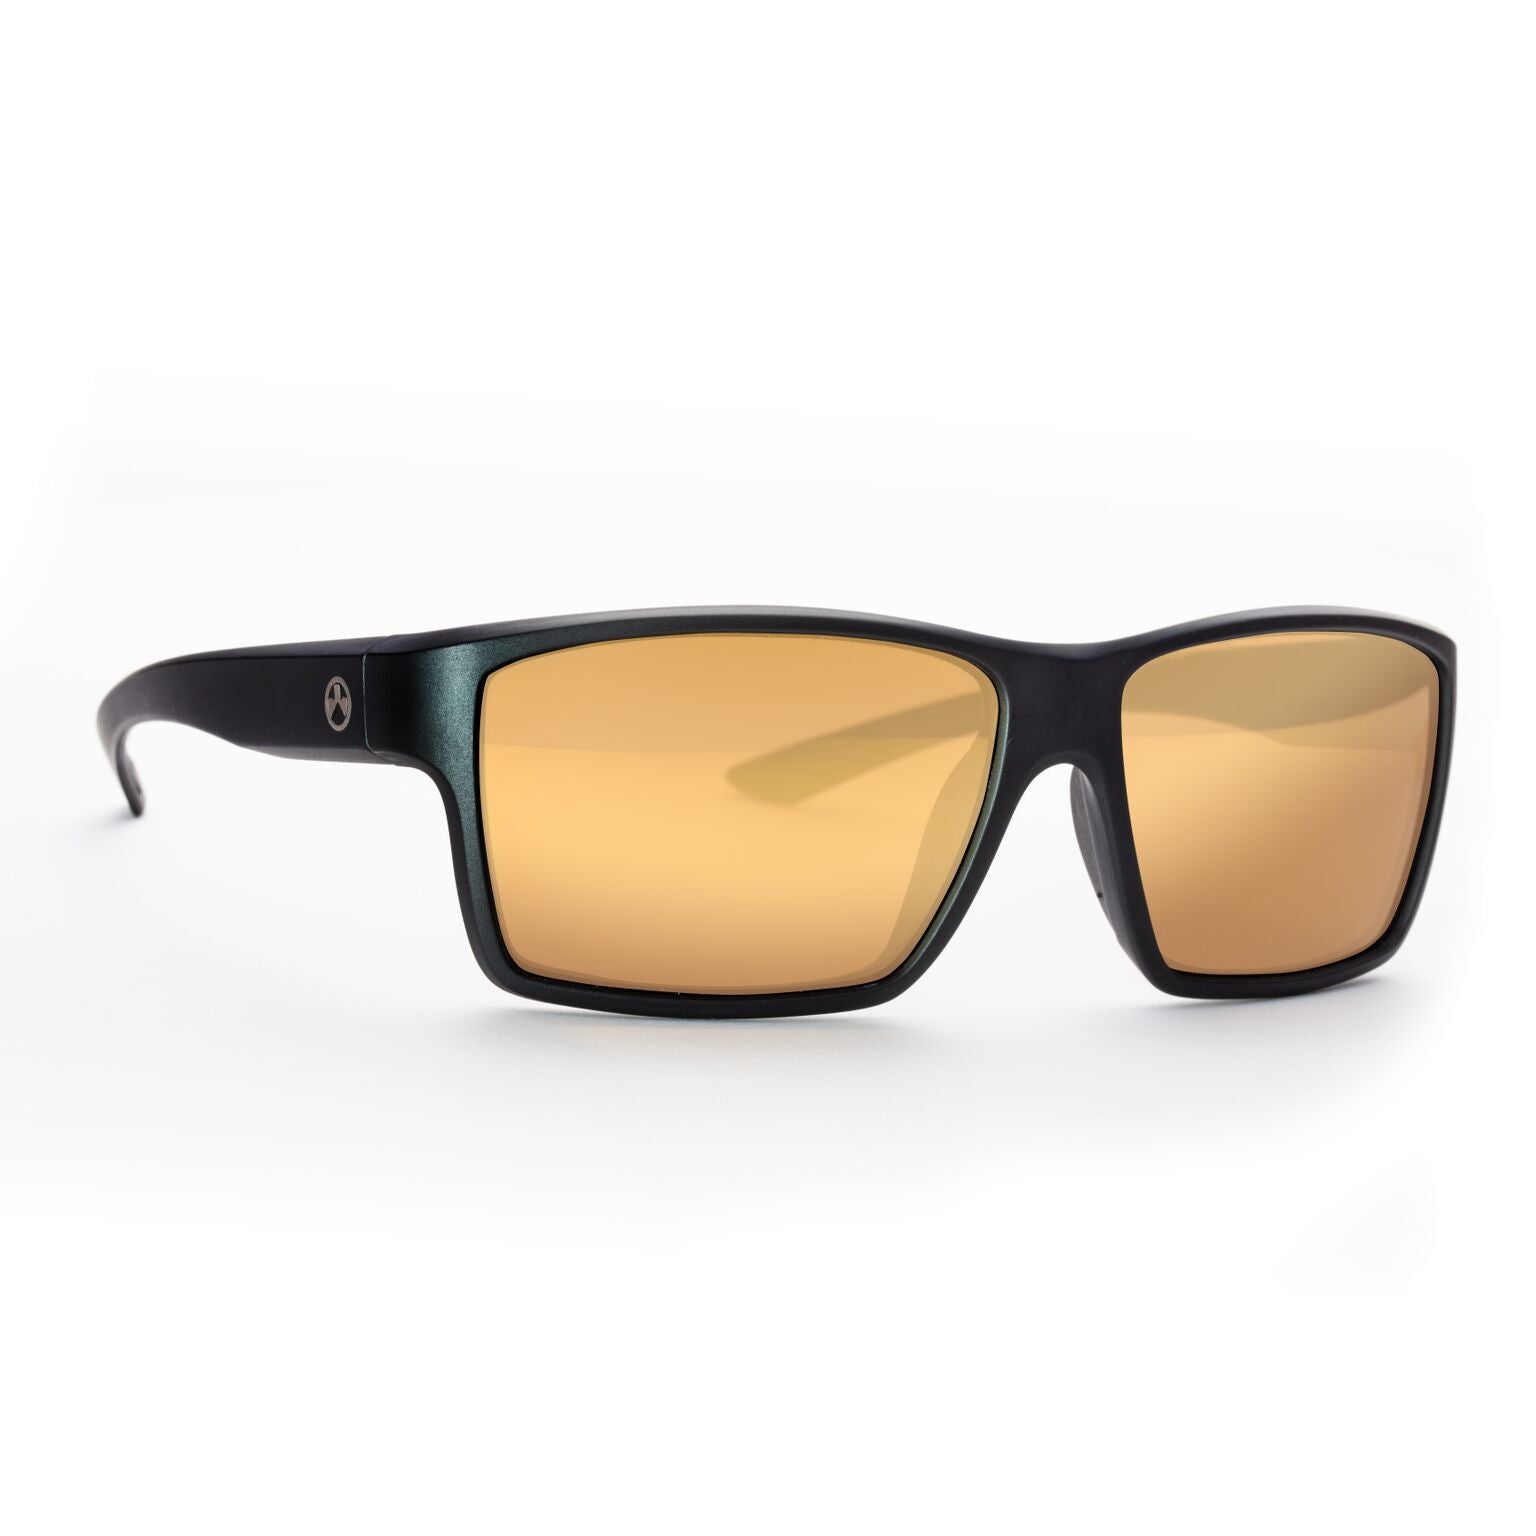 Magpul Explorer Eyewear - Black Frame - Polarized Lens Eyewear Magpul Black Bronze / Gold Mirror 